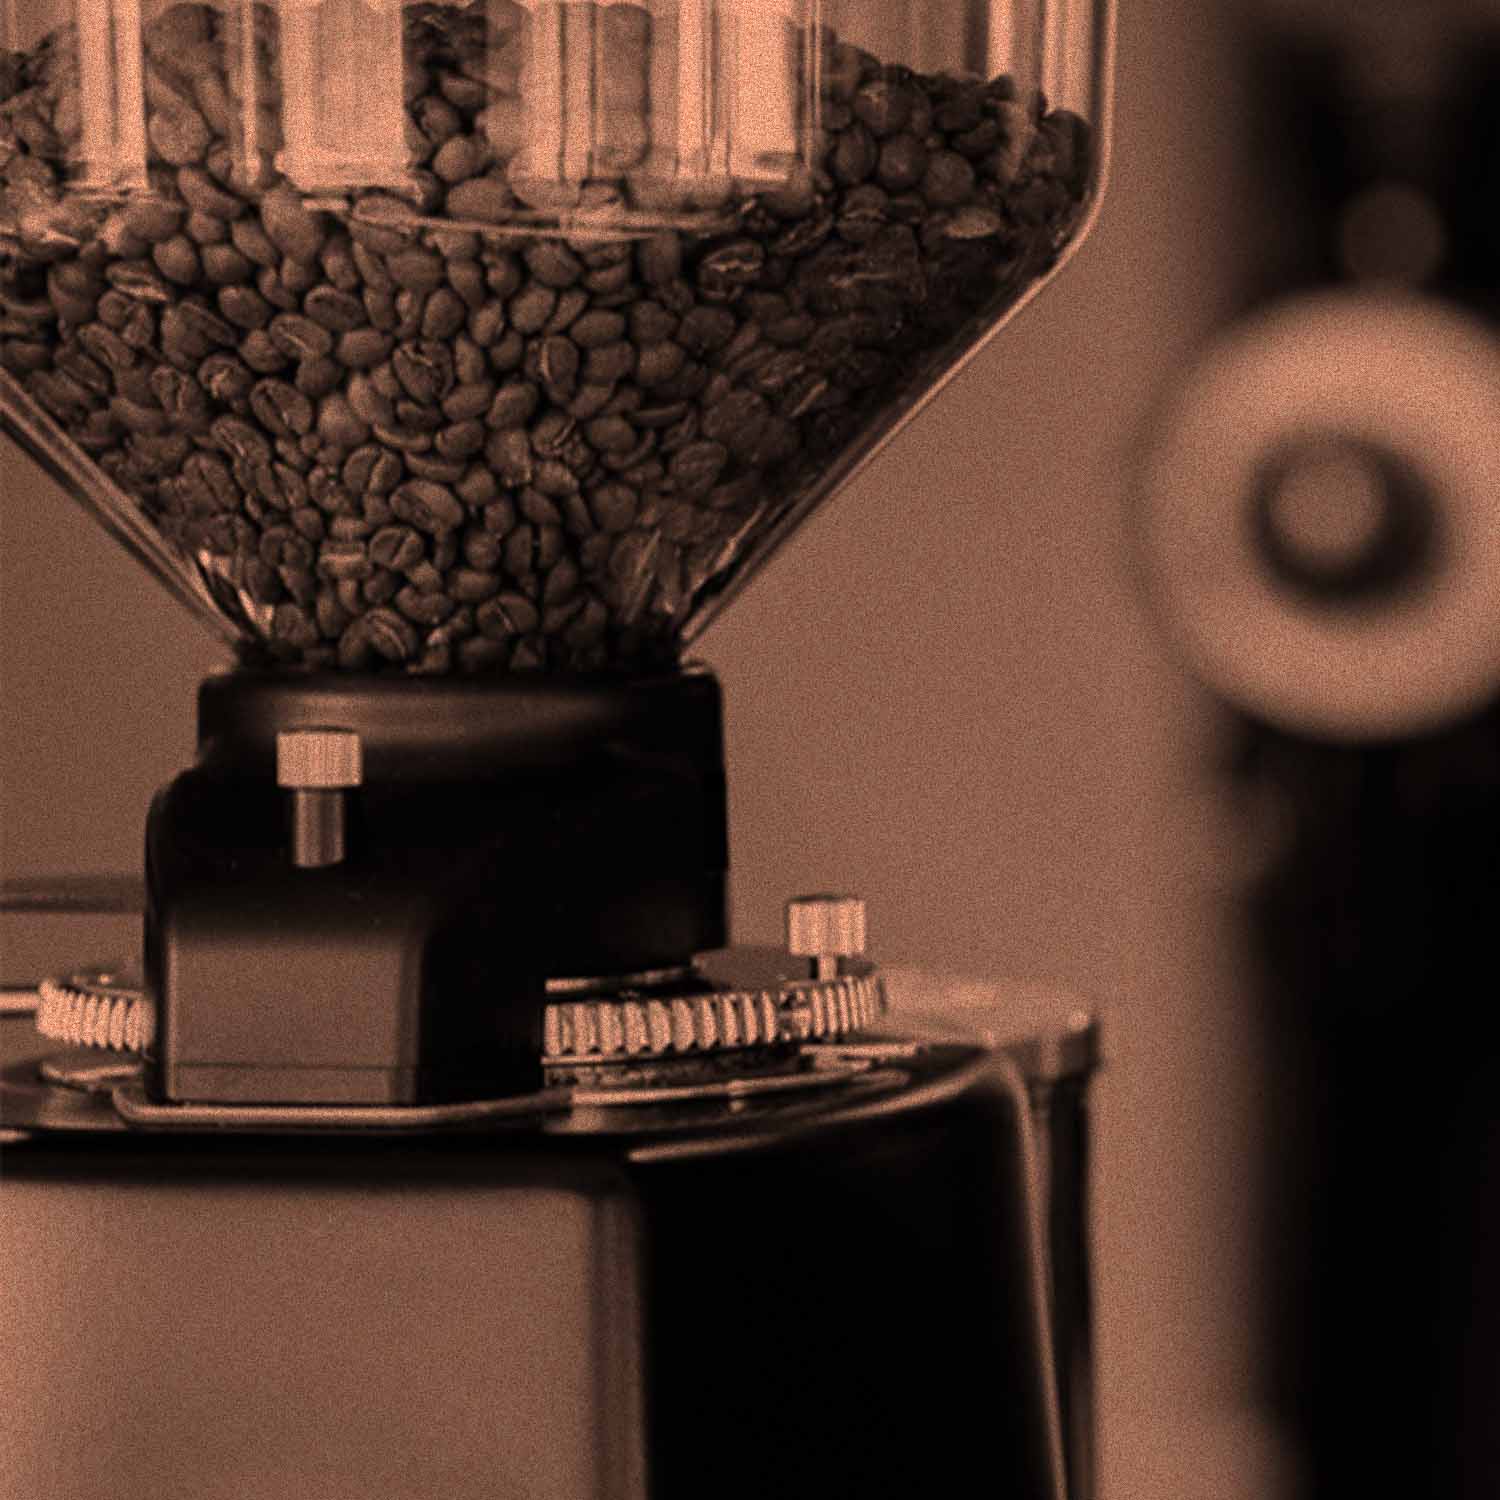 Die Nahaufnahme des Bohnenbehälters einer elektrischen Kaffeemühle. Der Behälter der Mühle ist mit Kaffeebohnen gefüllt.